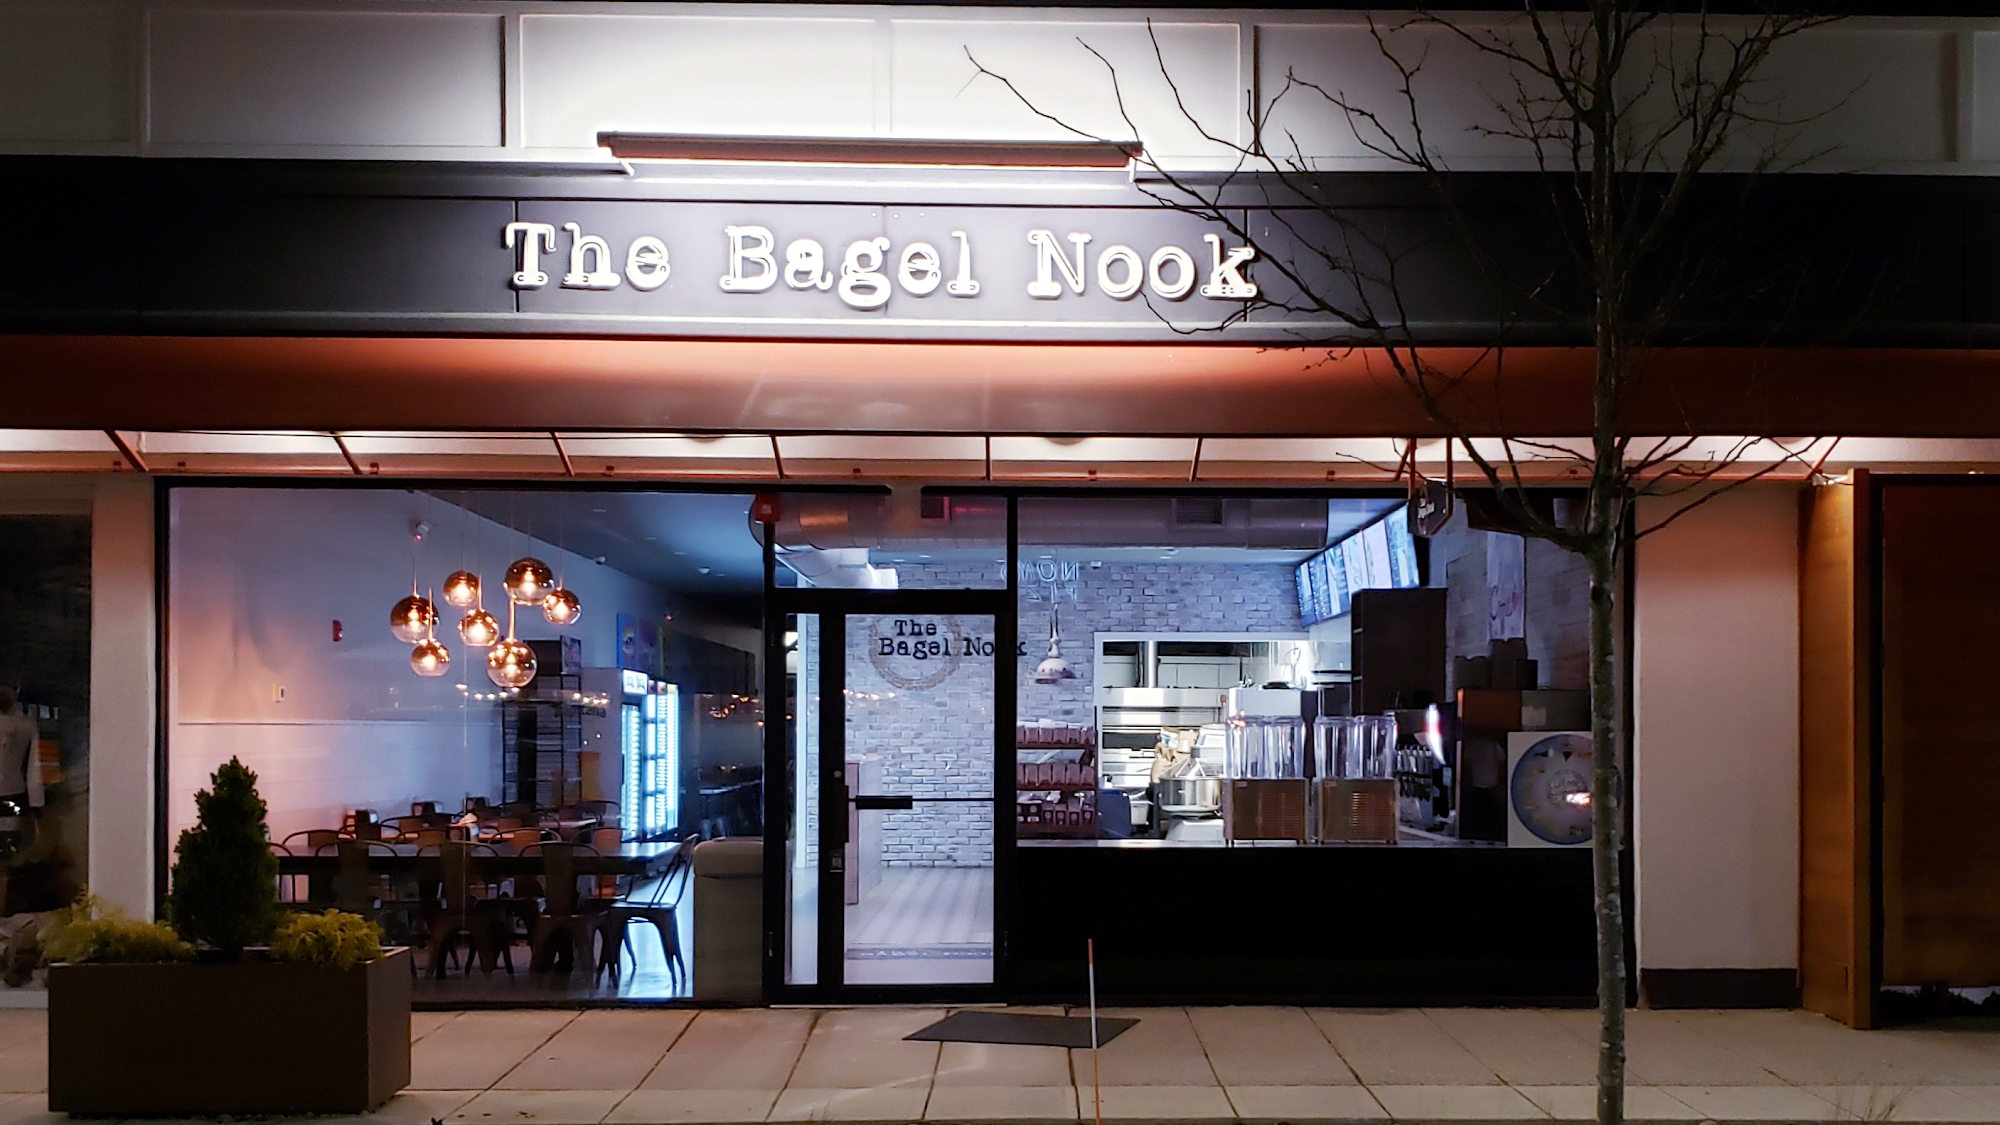 The Bagel Nook